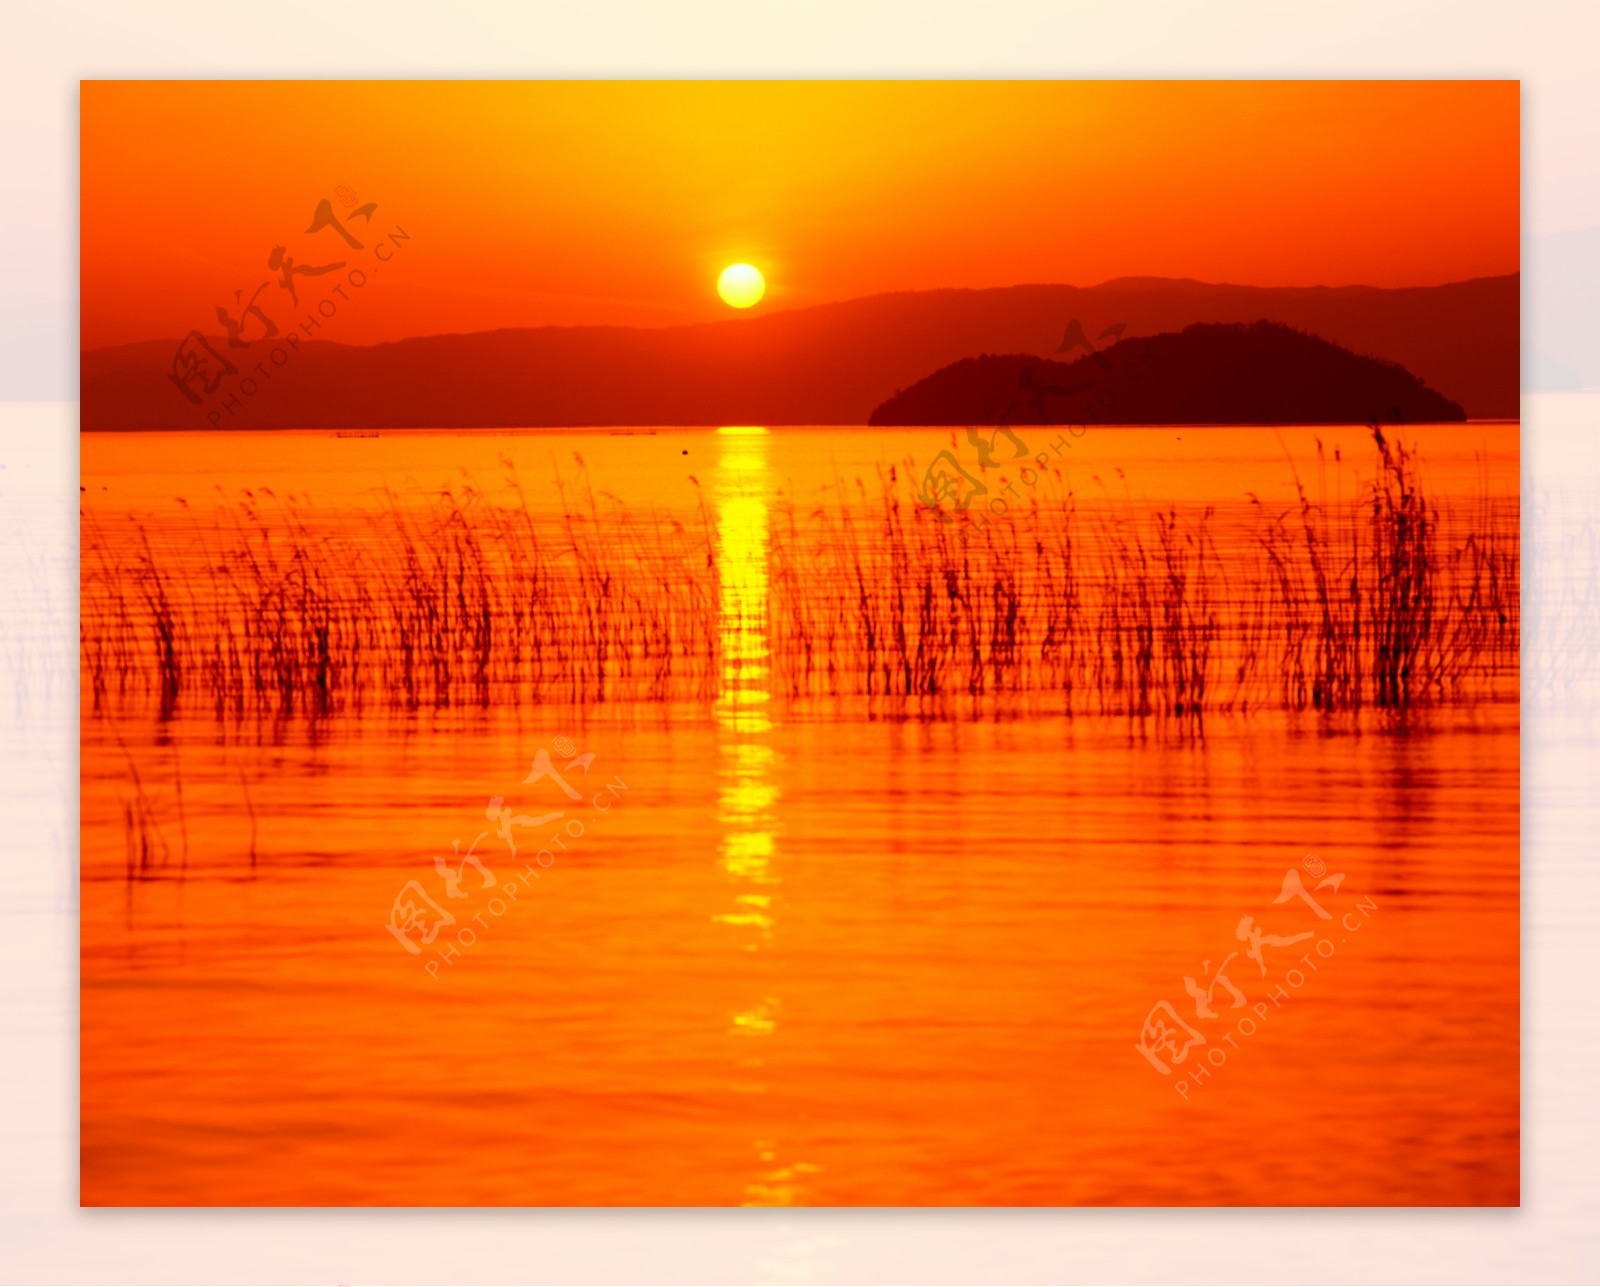 黄昏时的湖泊美景图片